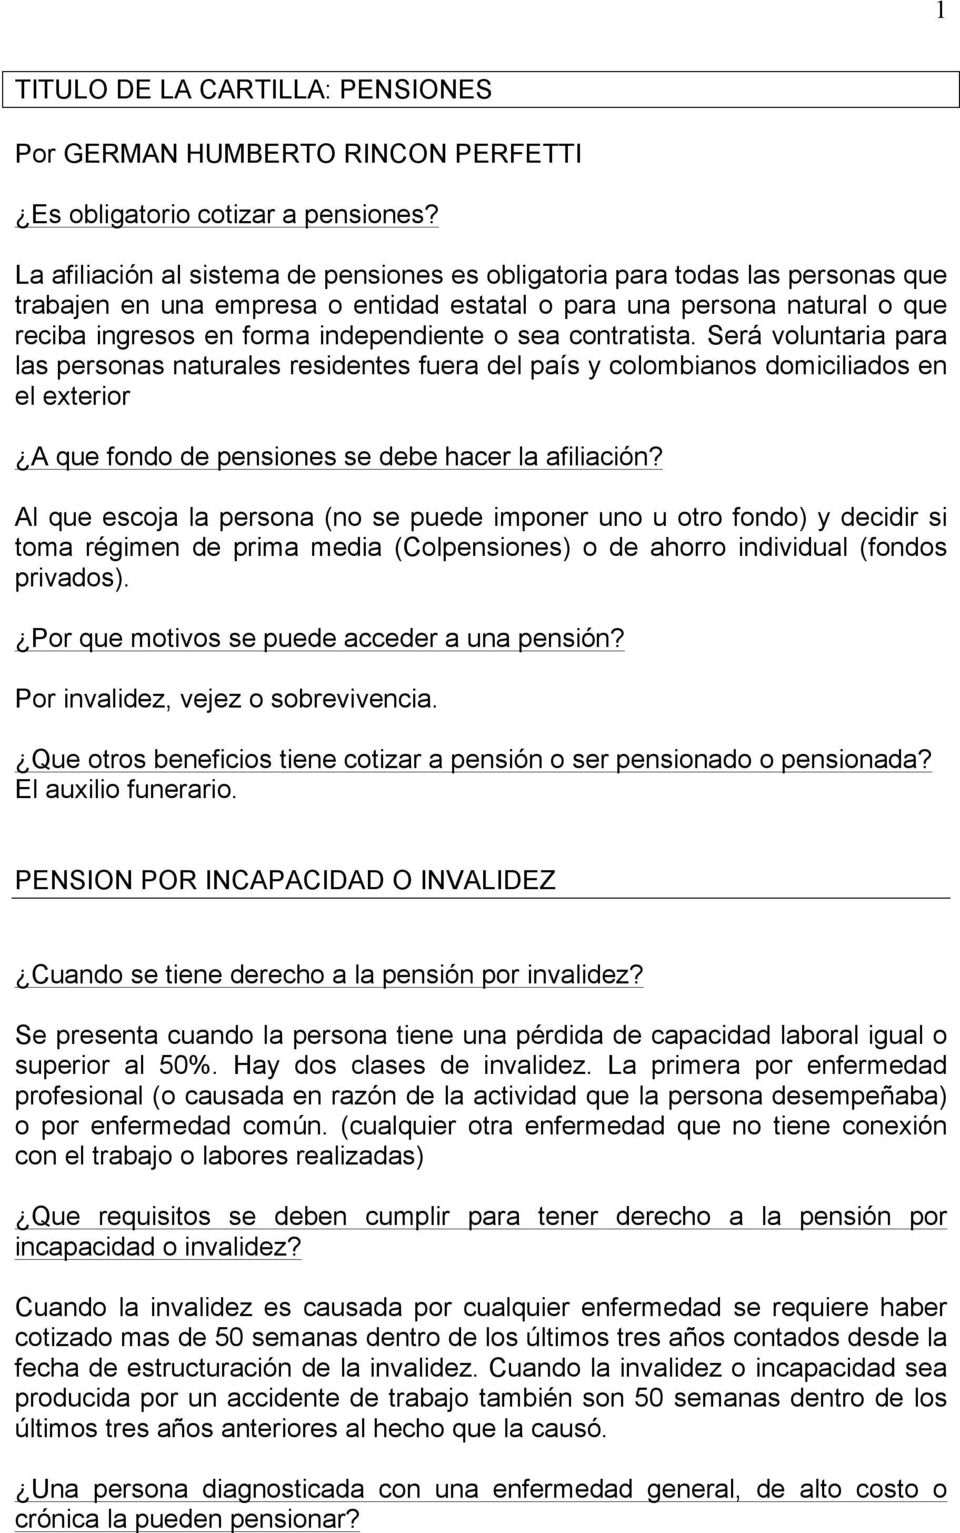 1 TITULO DE LA CARTILLA: PENSIONES Por GERMAN HUMBERTO RINCON PERFETTI Es obligatorio cotizar a pensiones?